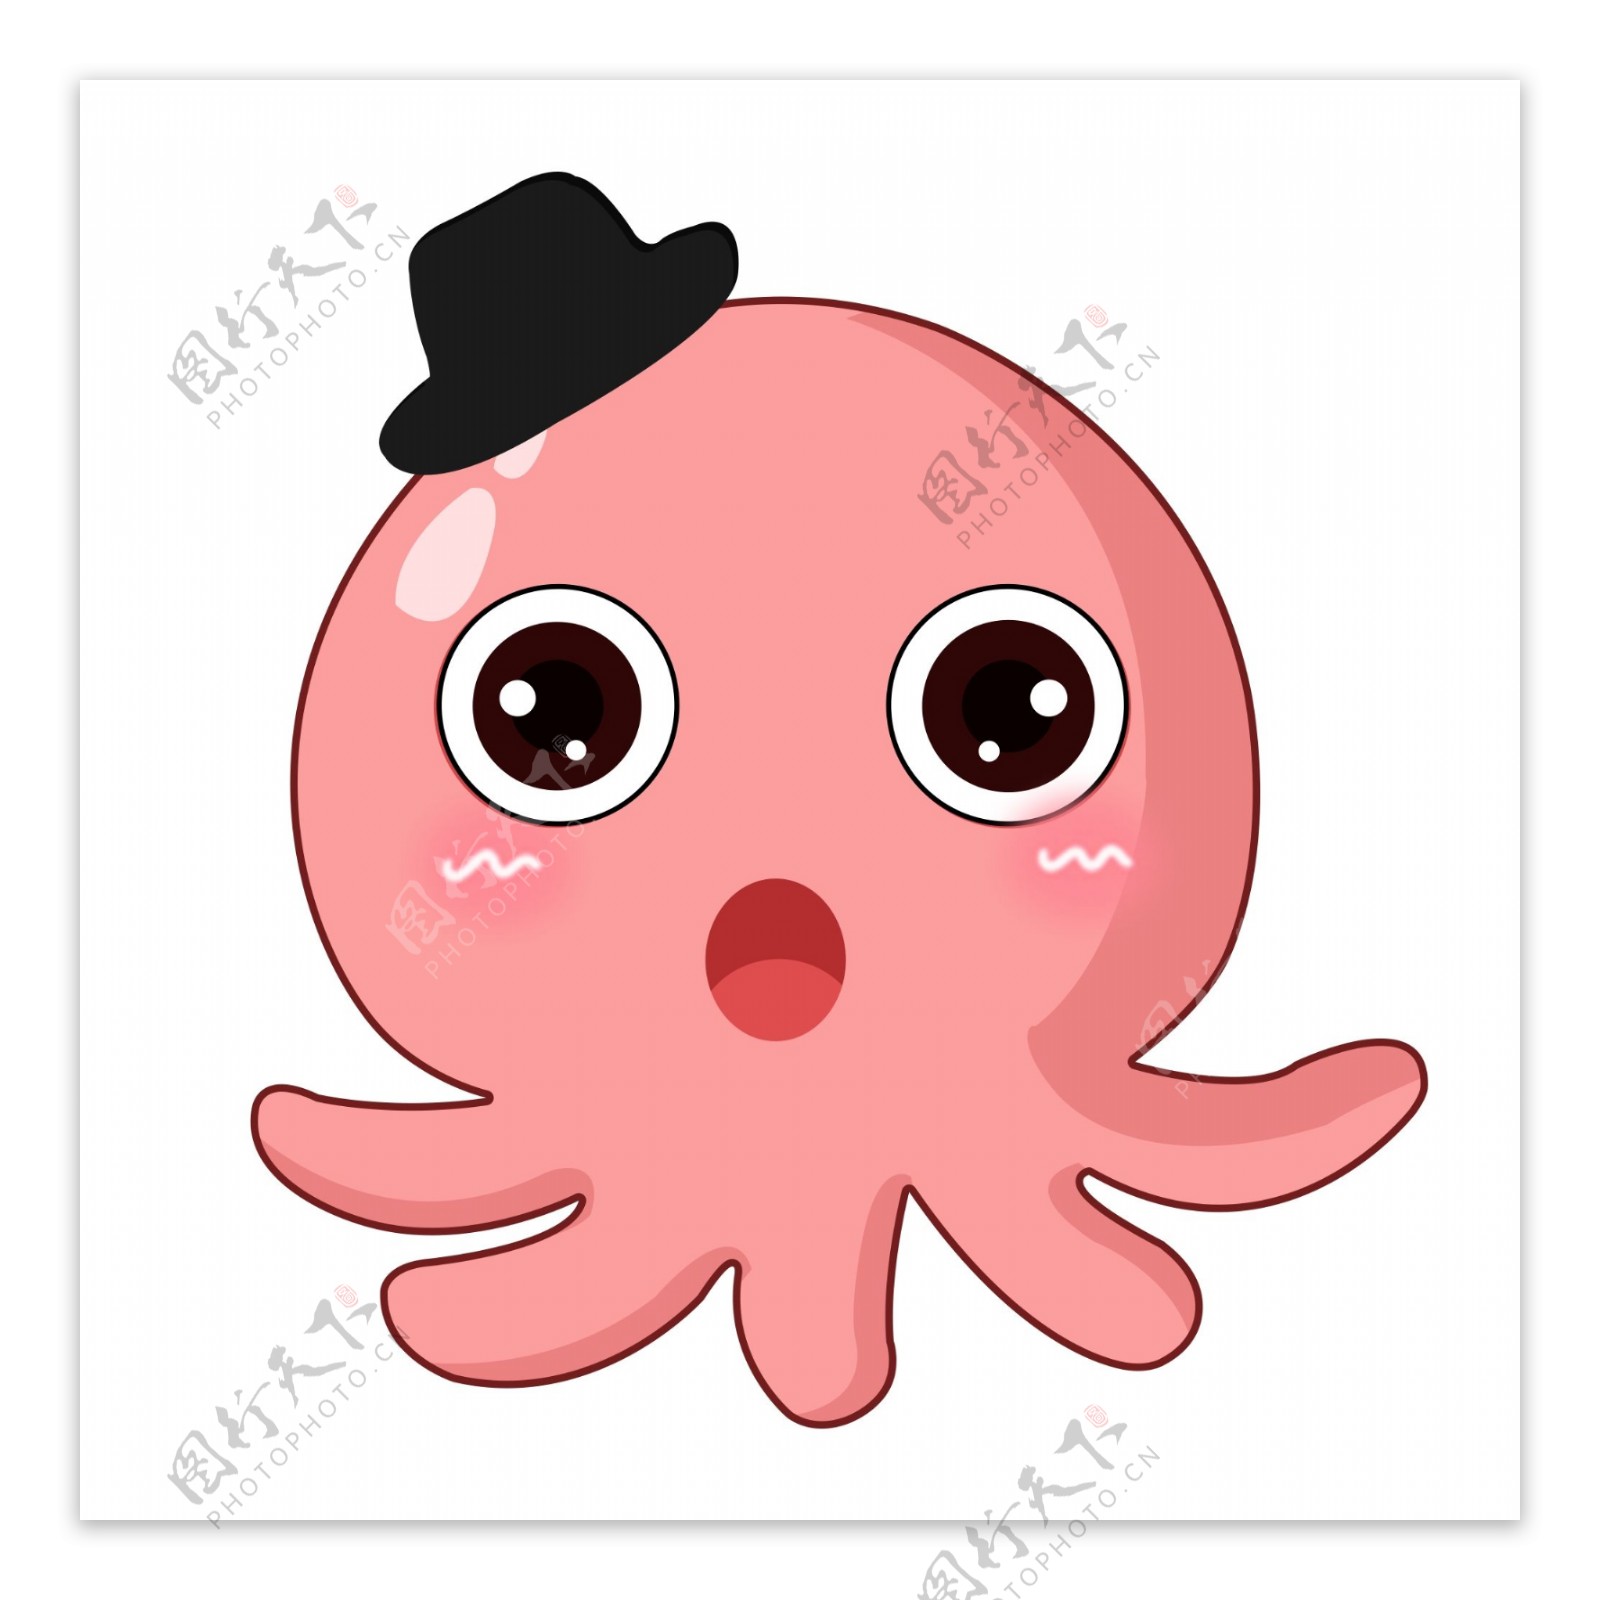 红色可爱萌萌哒卡通扁平章鱼元素